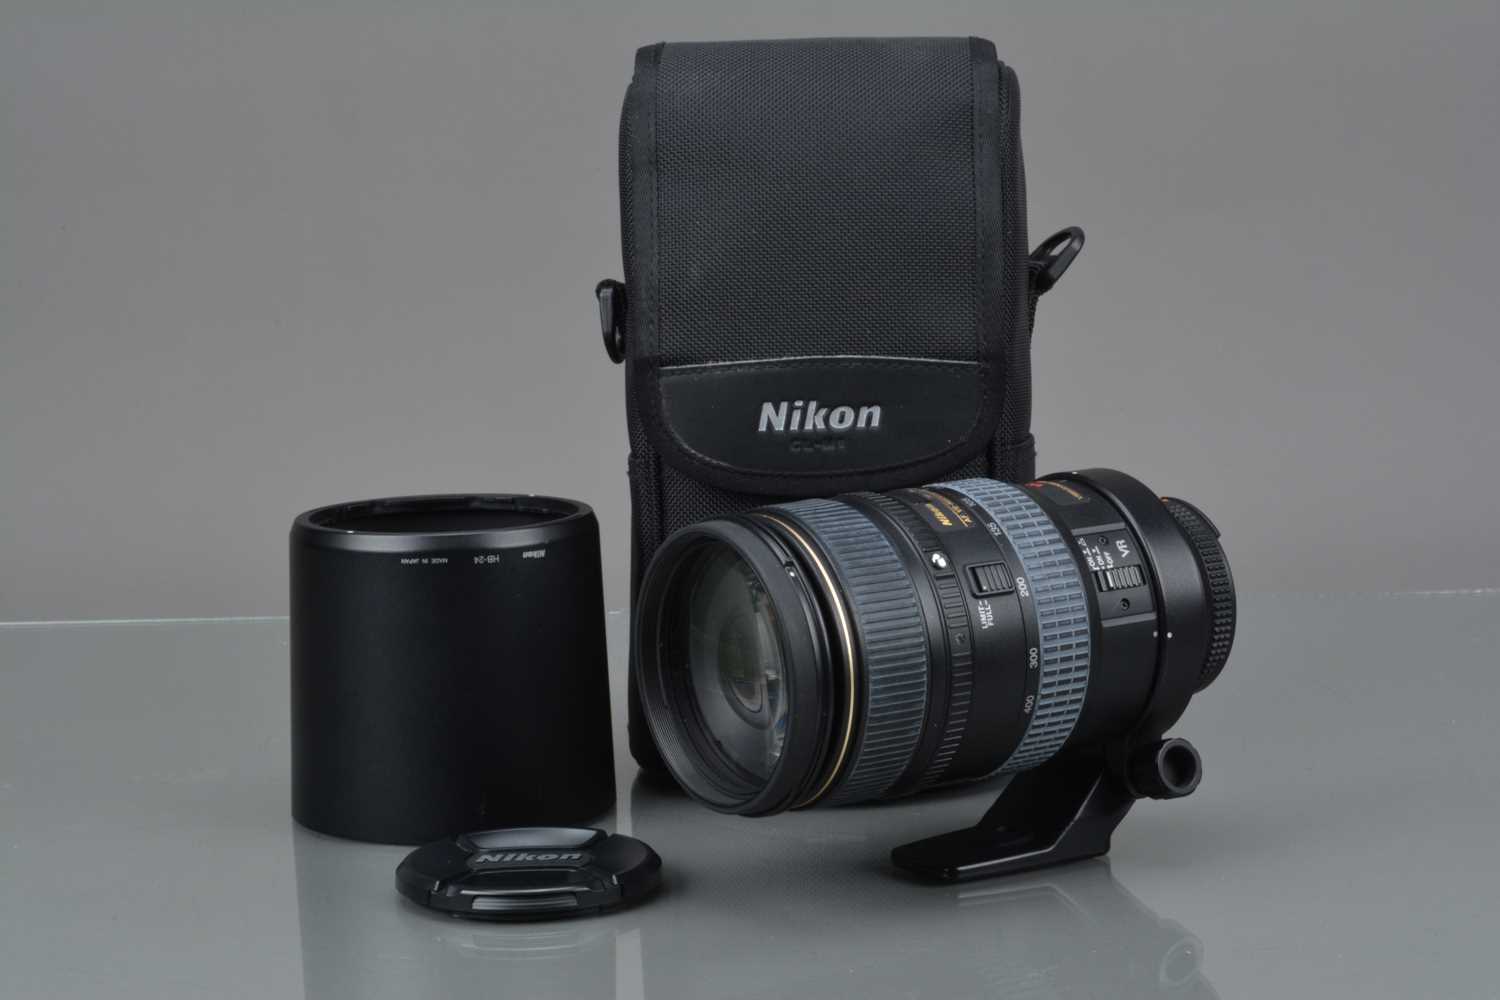 A Nikon ED AF VR-Nikkor 80-400mm f/4.5-5.6D Lens,